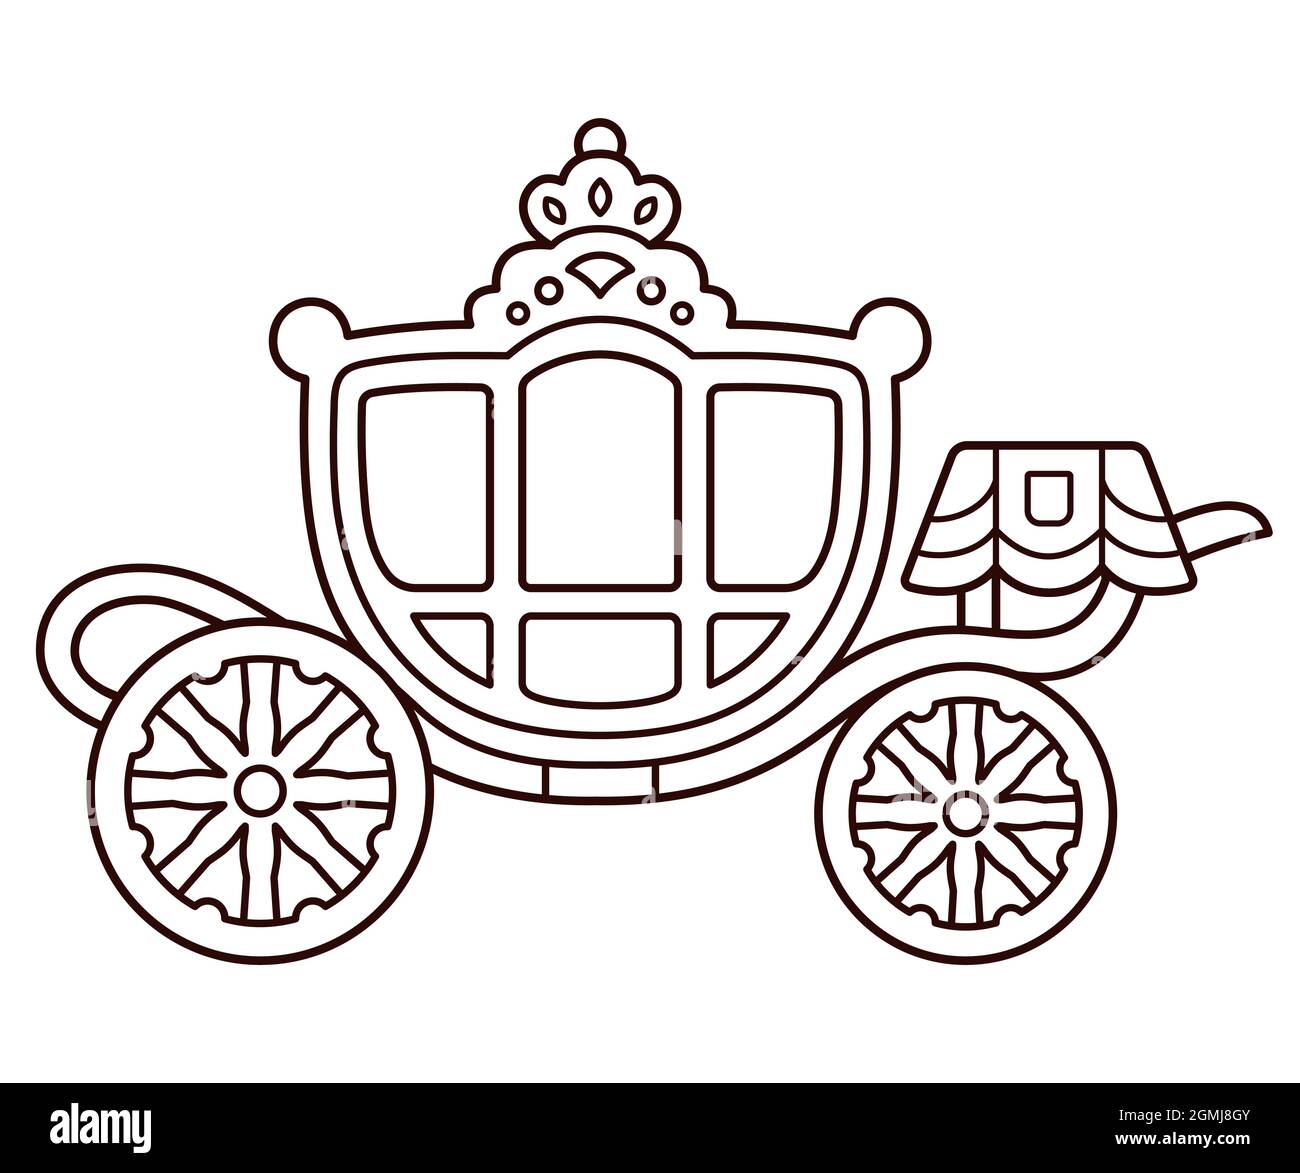 Gouden Koets (Goldener Coach) niederländische königliche Familienwaggon. Cute Cartoon Zeichnung, schwarz-weiße Linie Kunst für die Färbung. Vektorgrafik Clip Art Illustration. Stock Vektor